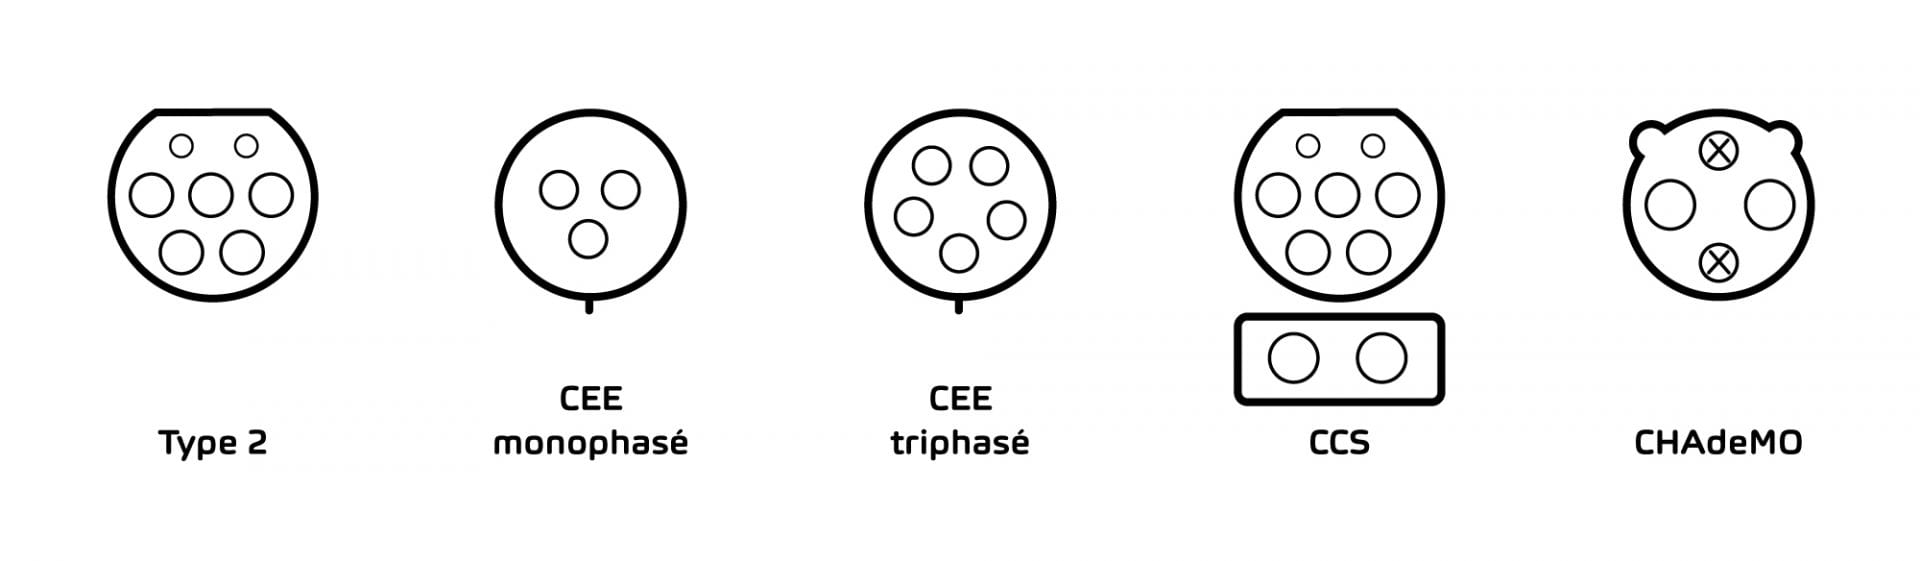 Illustration opposant les types de prises «type 2», «CEE», «CCS» et «CHAdeMO».